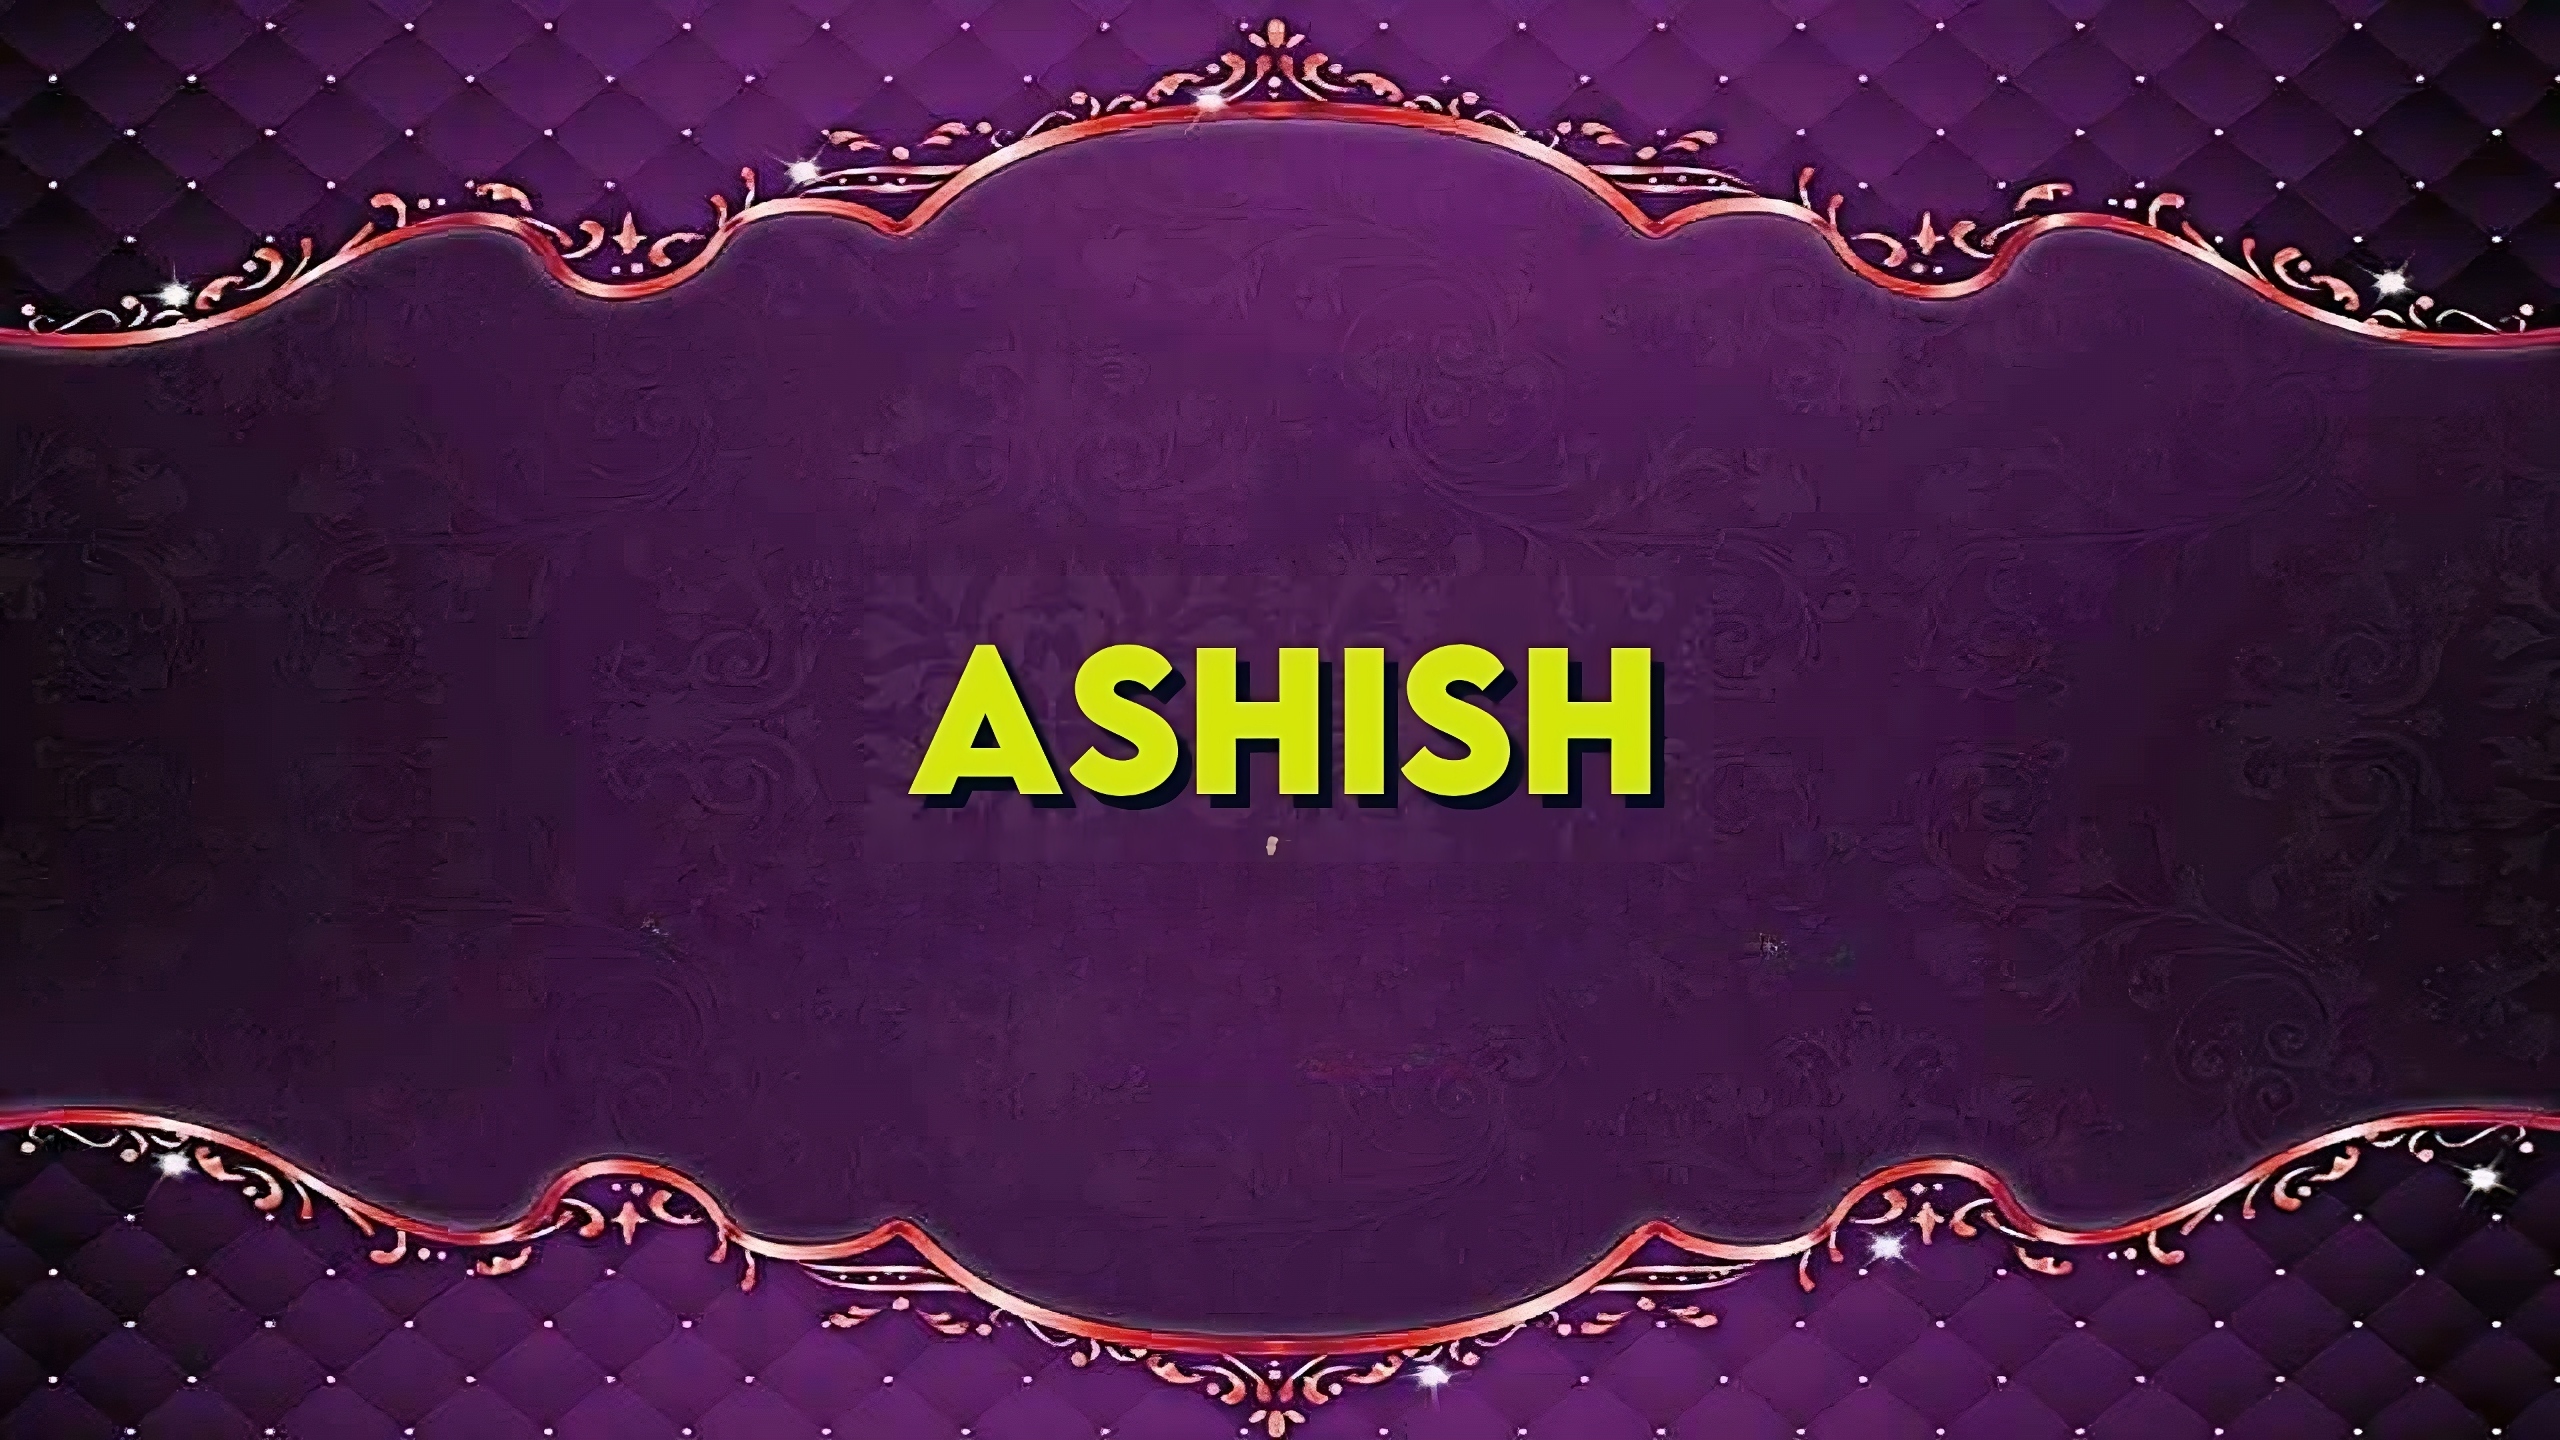 Ashish Name - purple bg ashish